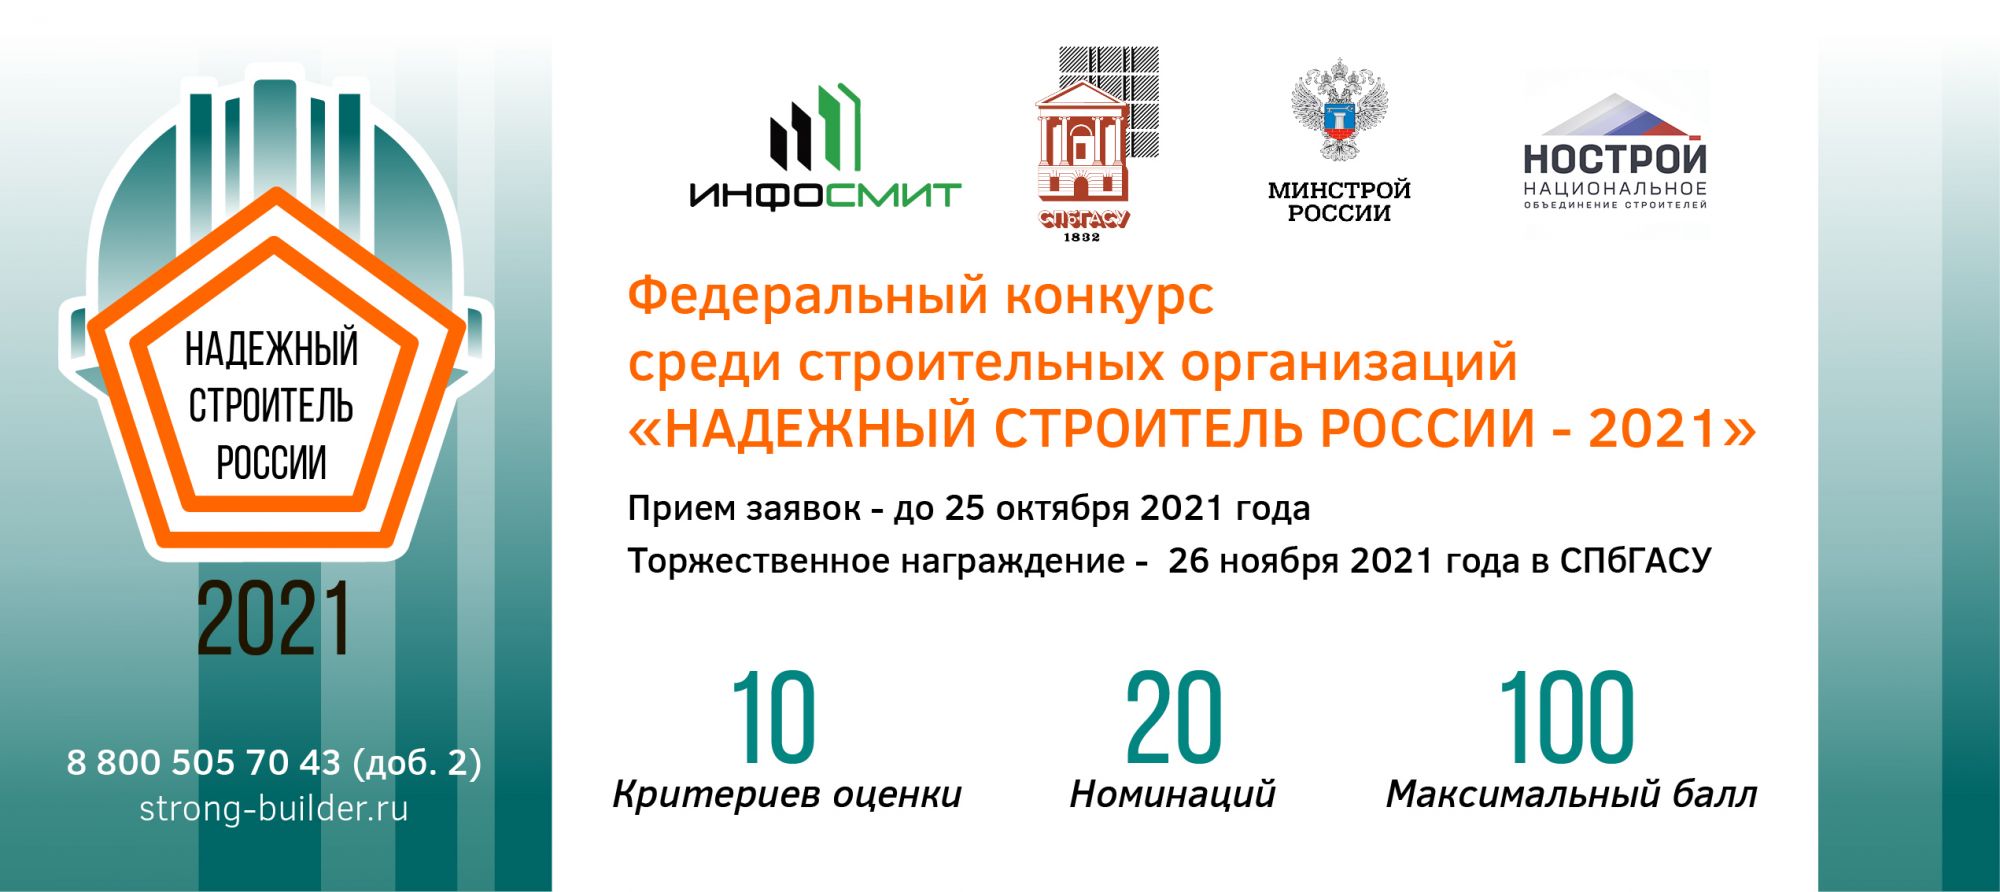 Федеральный конкурс «Надежный строитель России-2021»